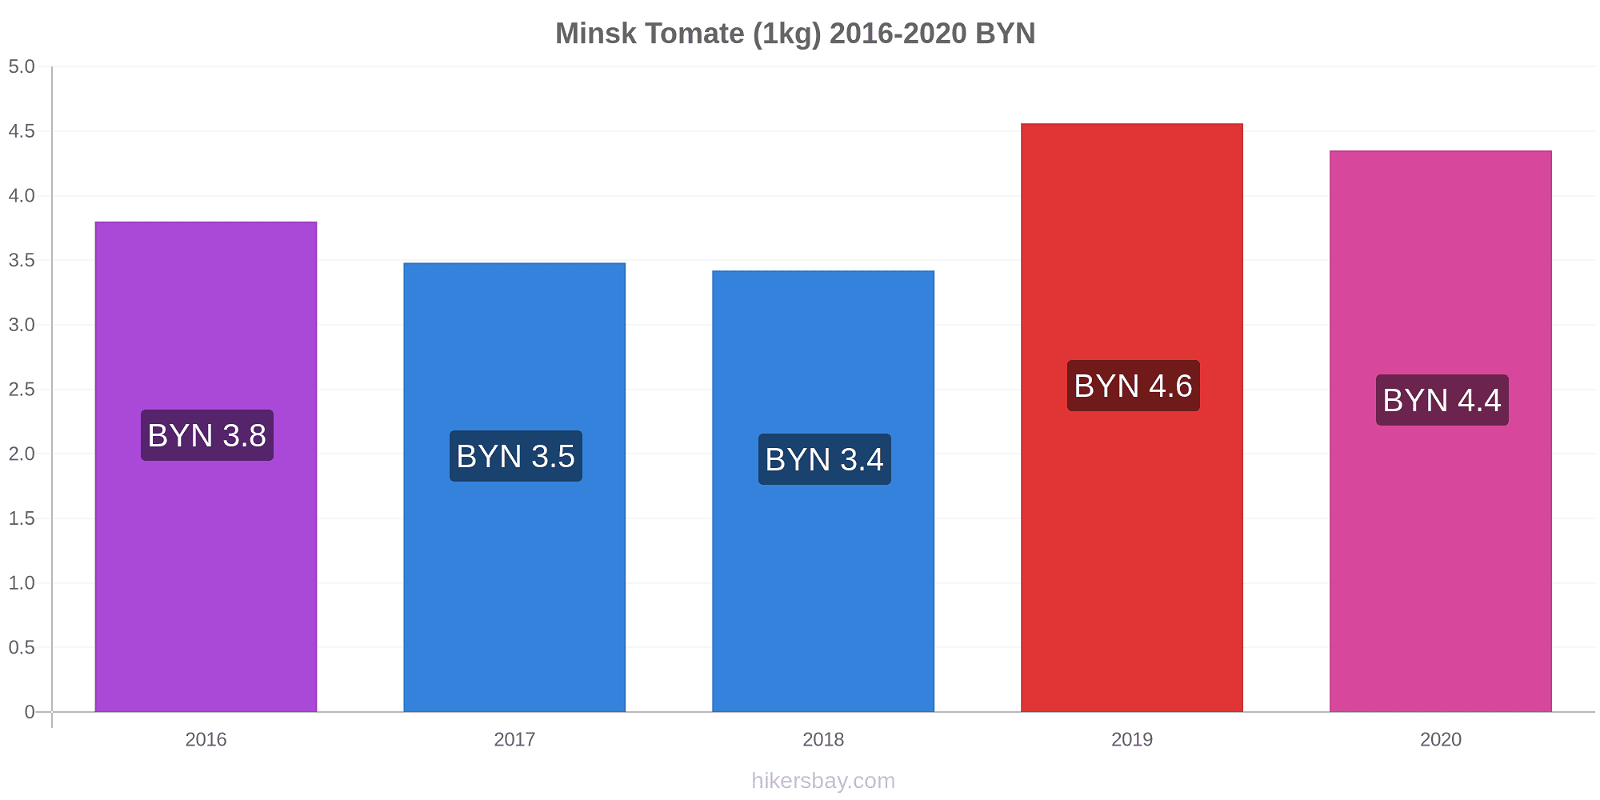 Minsk variação de preço Tomate (1kg) hikersbay.com